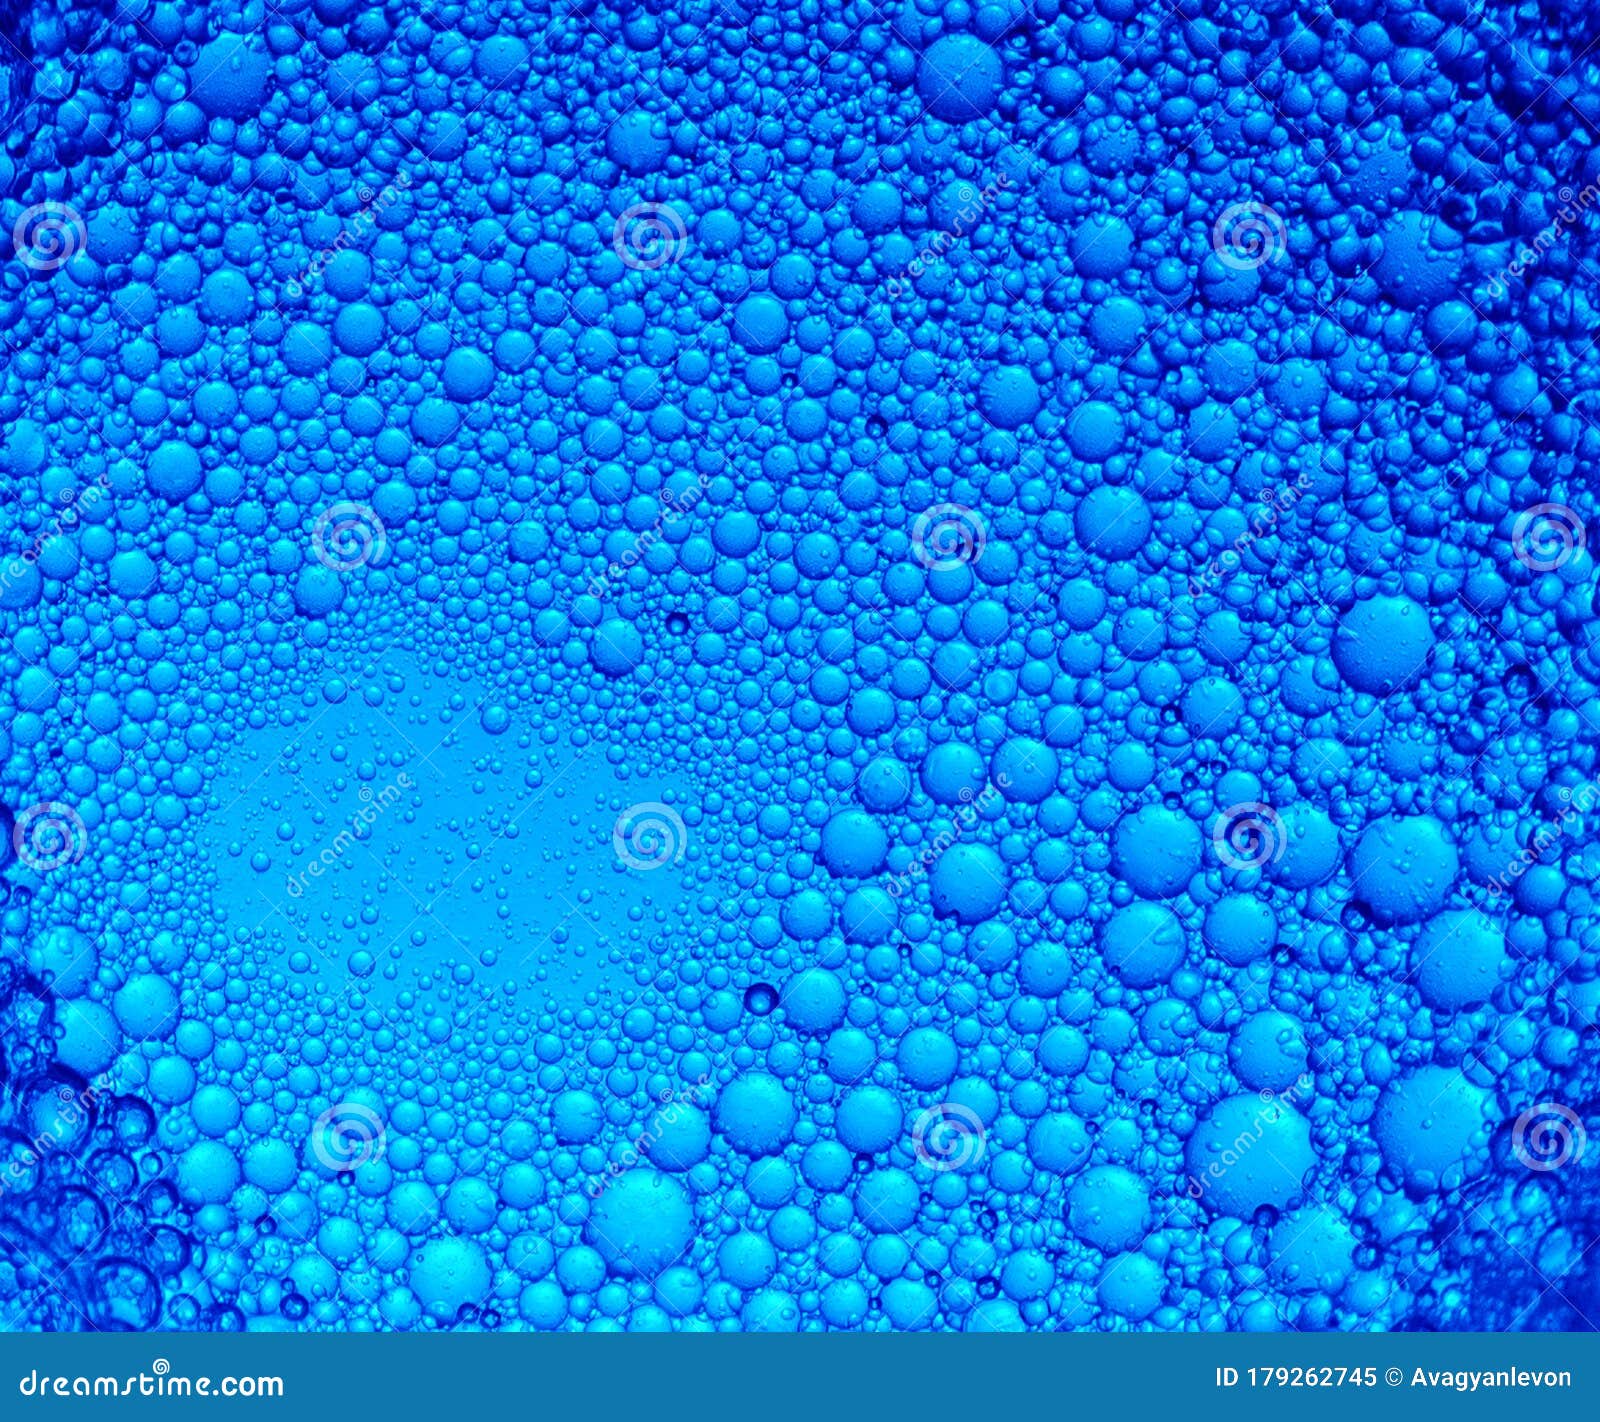 1294724 Blue Bubble Background Images Stock Photos  Vectors   Shutterstock